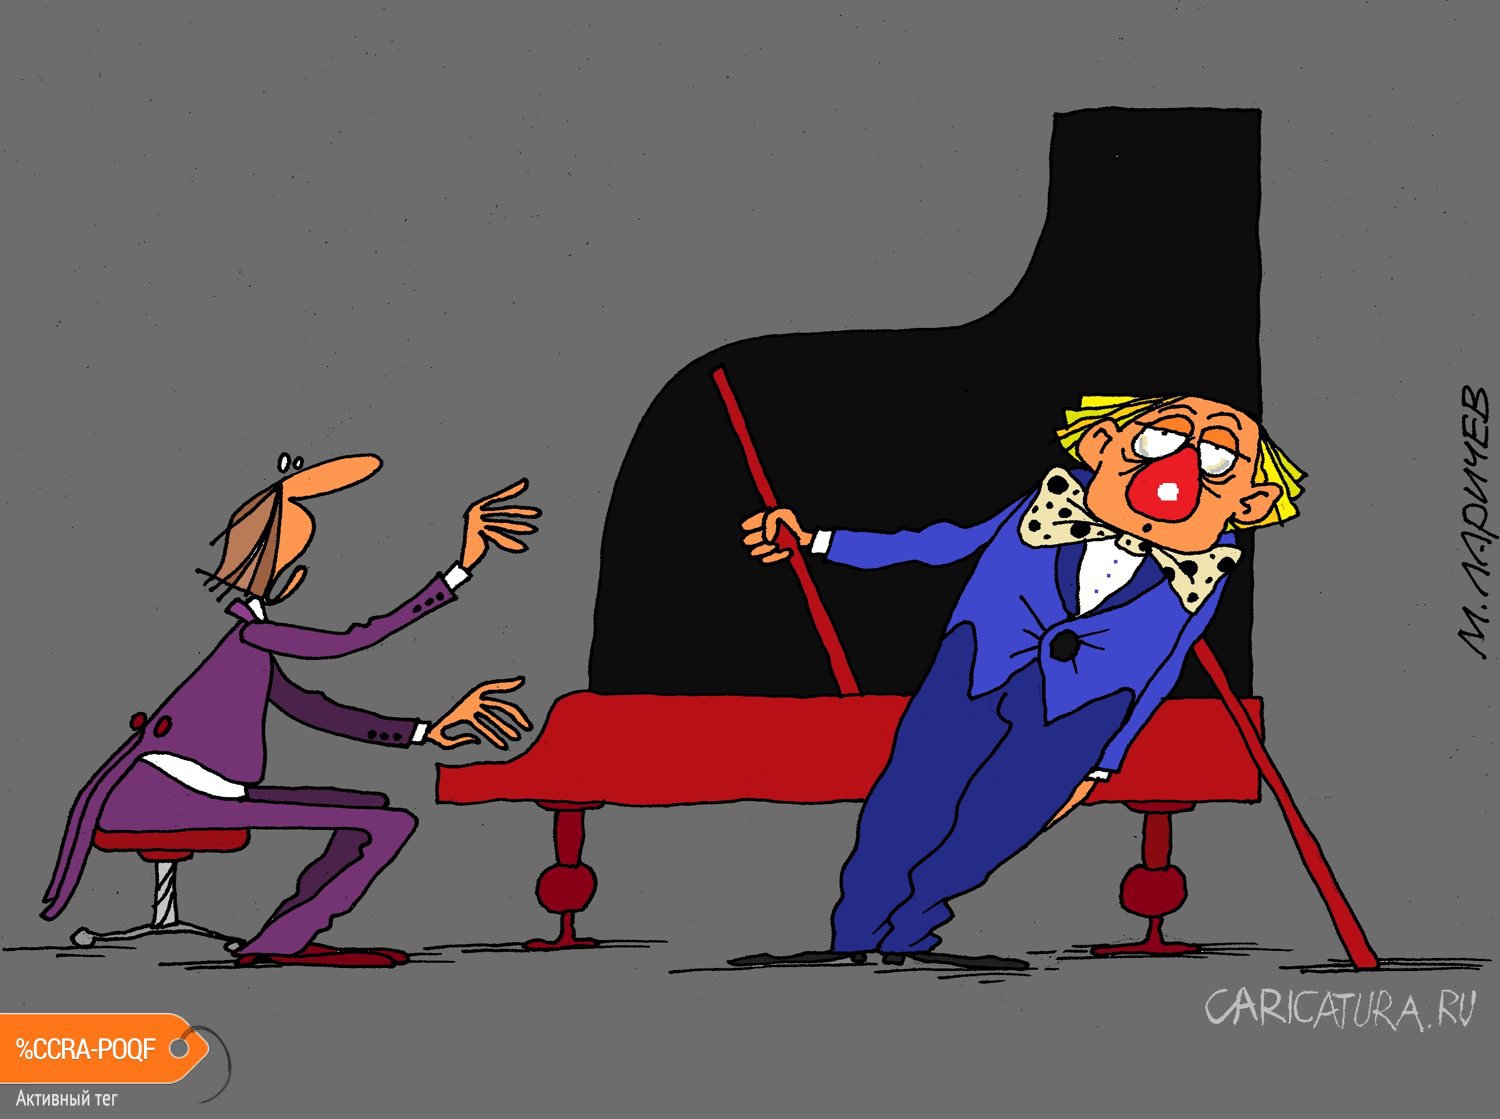 Карикатура "Стоять!", Михаил Ларичев